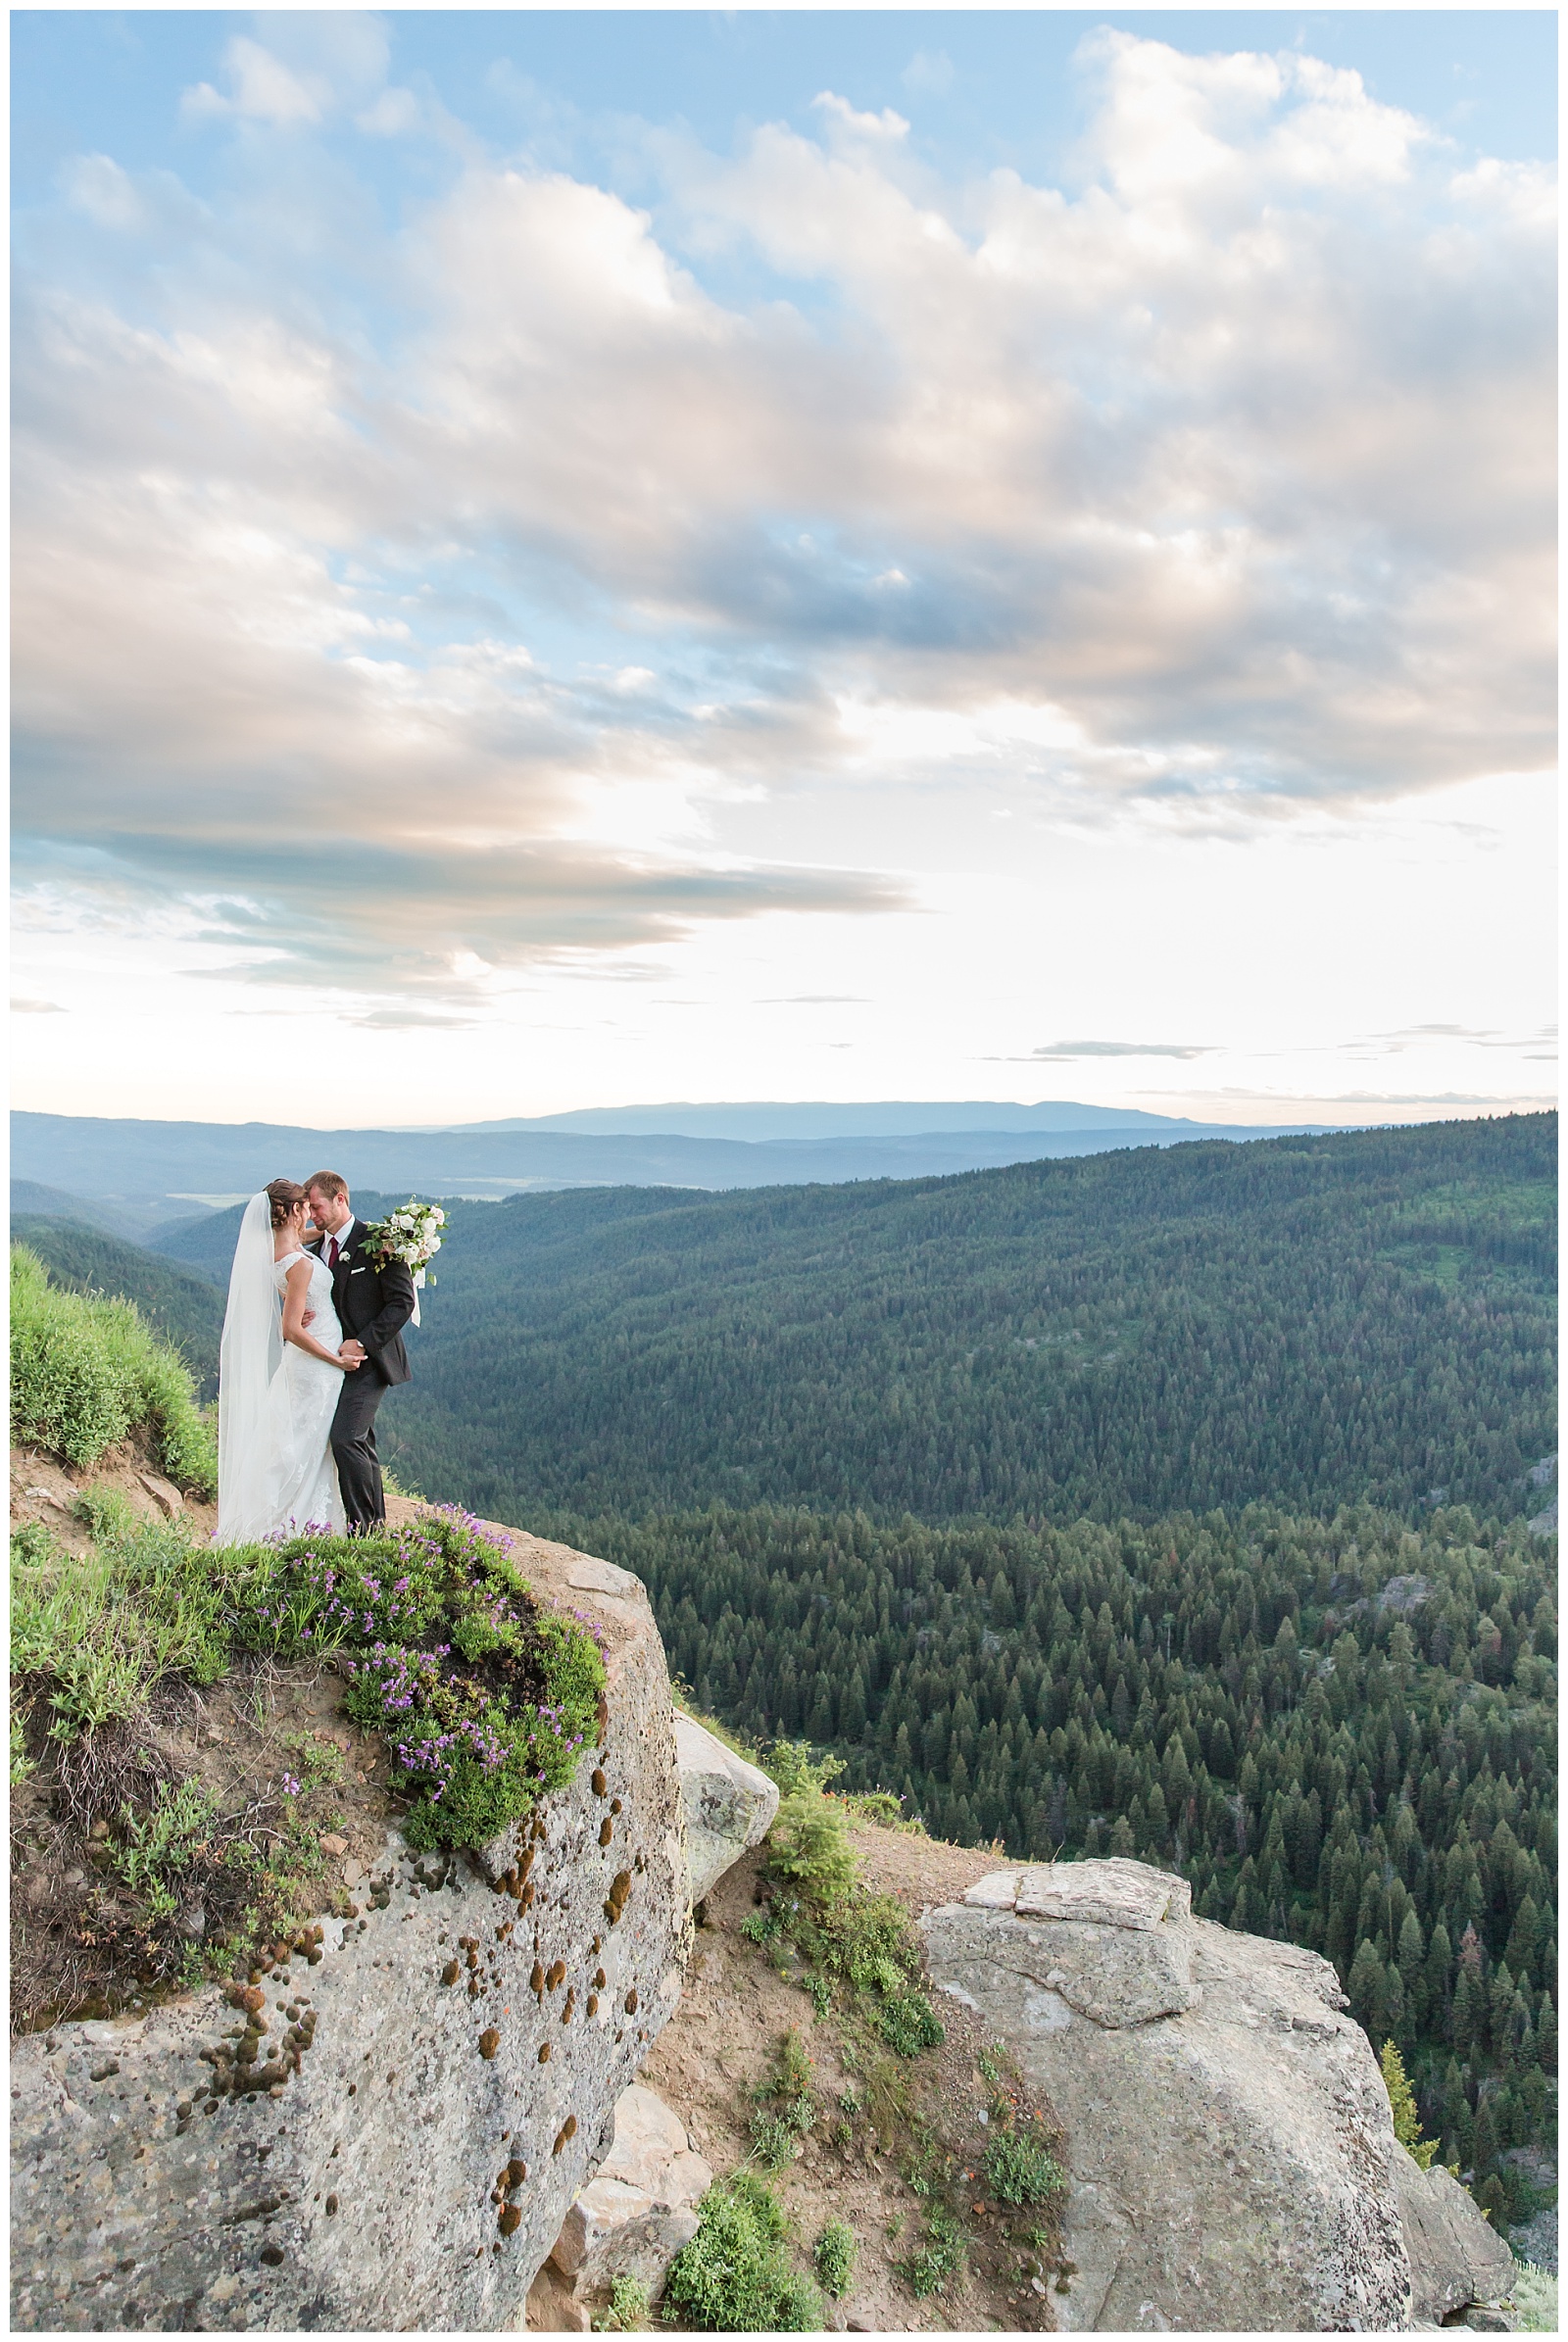 McCall Wedding Photography, McCall Wedding Photographer, McCall Idaho Weddings, Brundage Mountain Resort, Brundage Wedding, Idaho Mountain Wedding, 